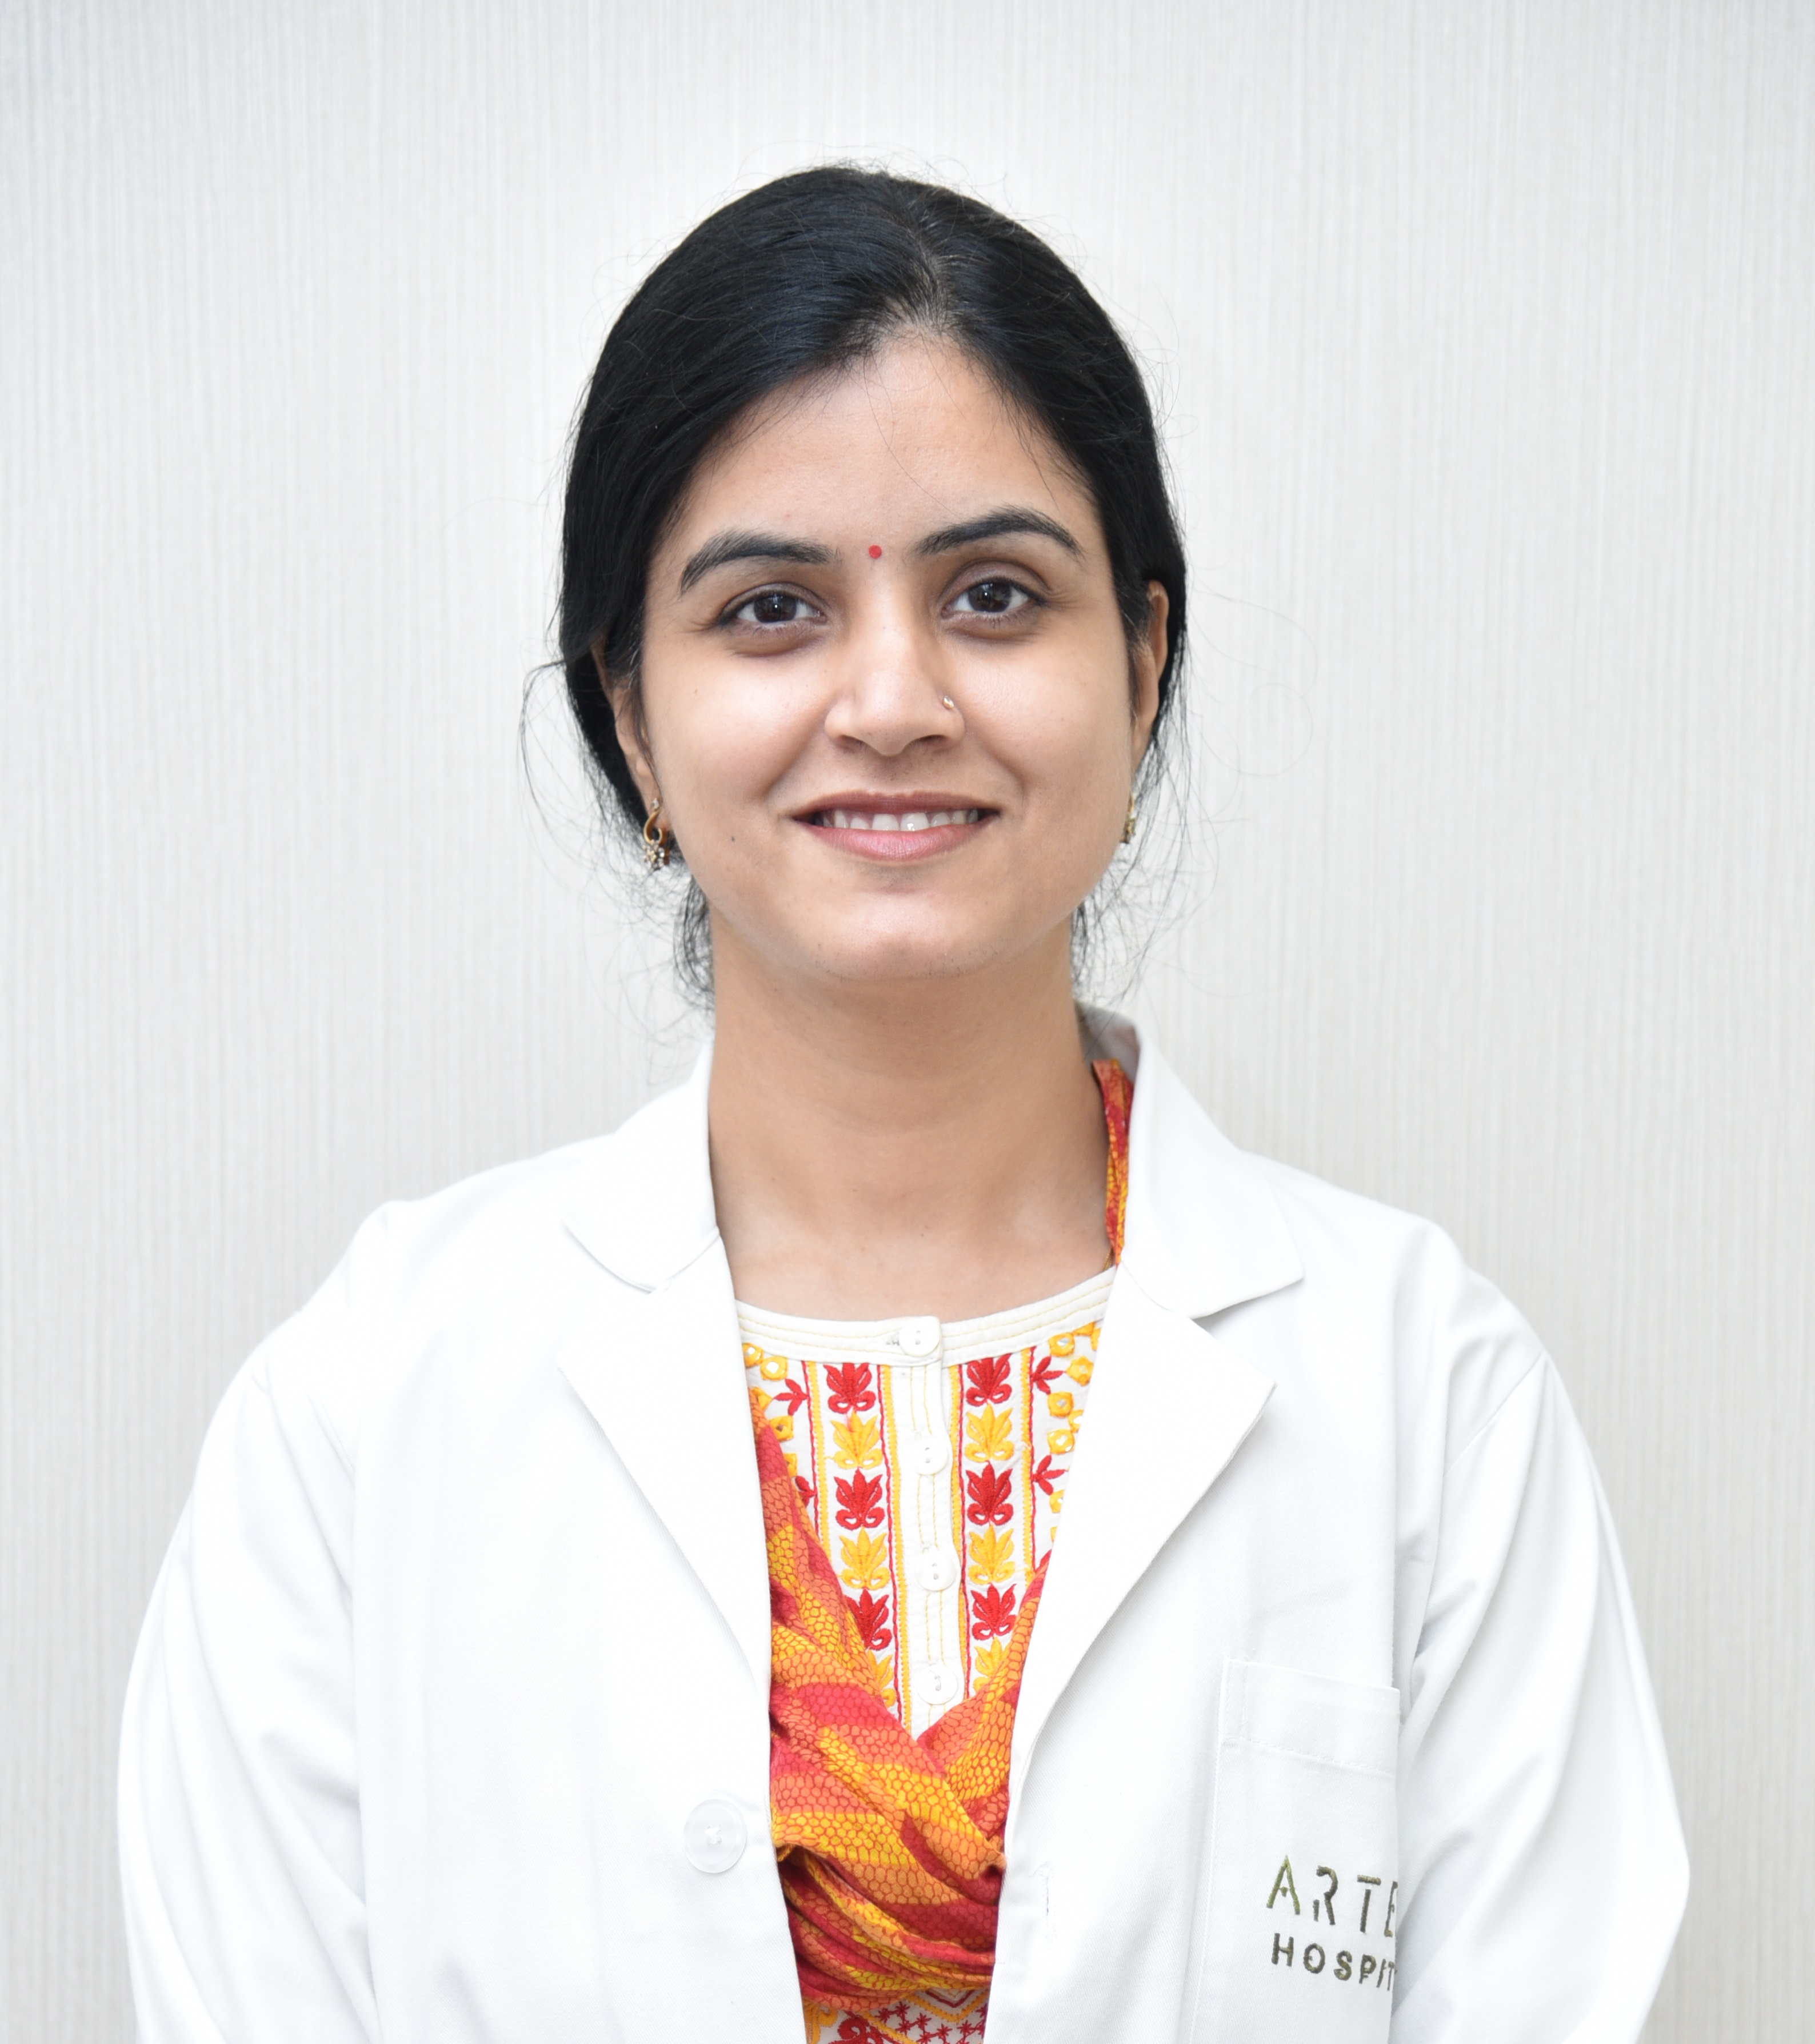 Dr. Parvinder Kaur Arora